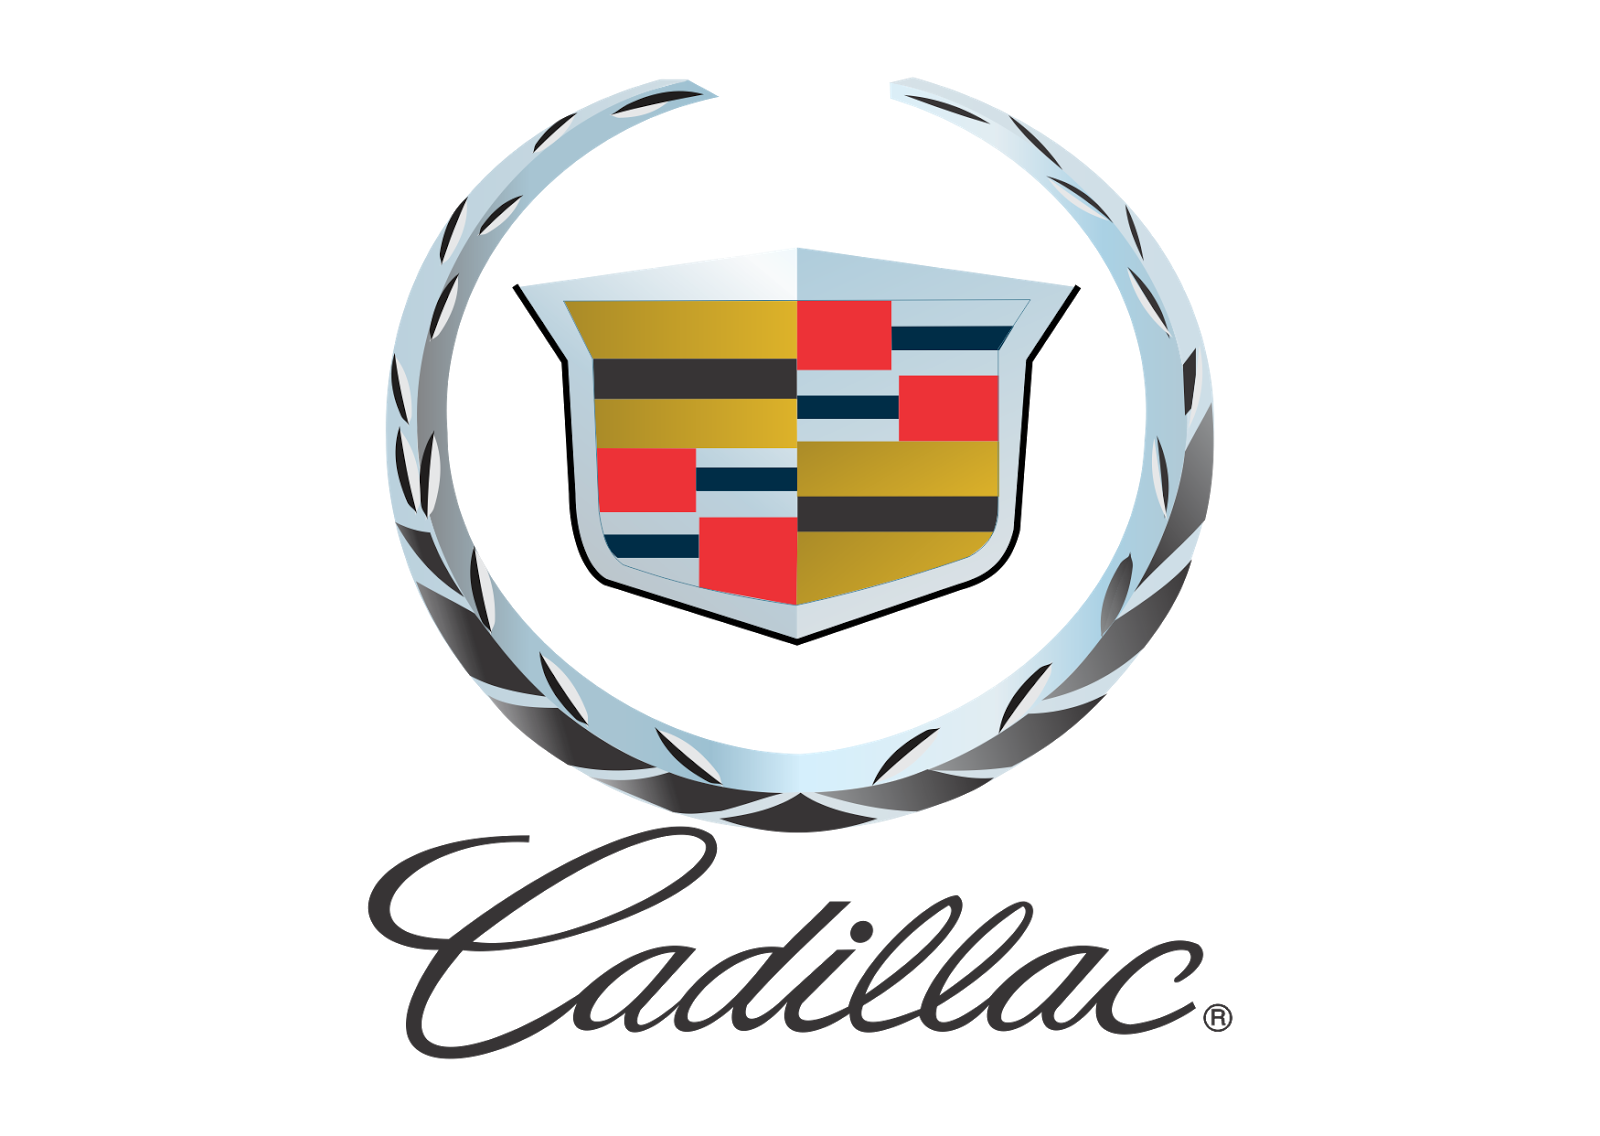 Cadillac logosu şeffaf